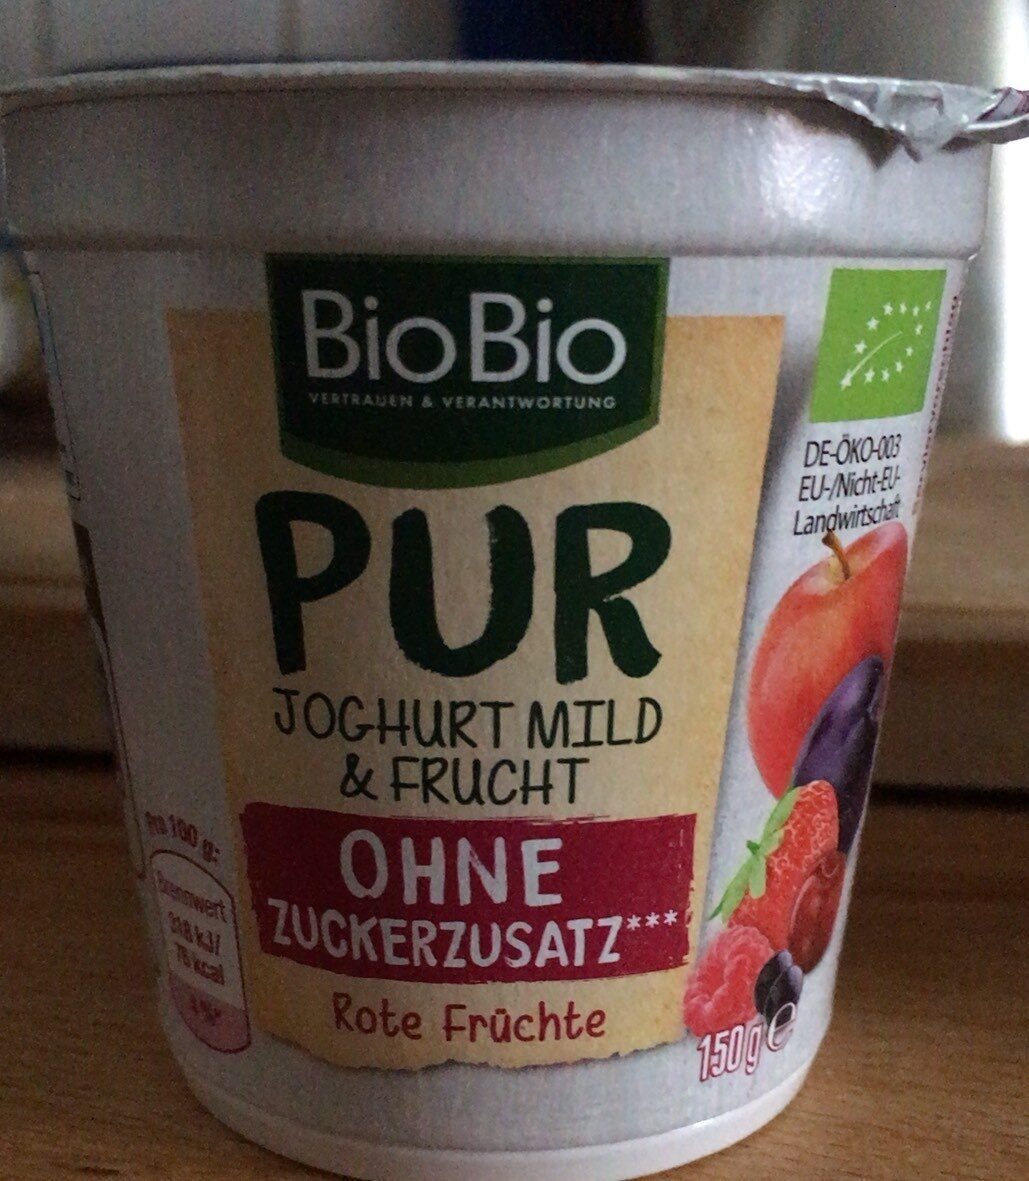 Pur Joghurt Mild & Frucht - Rote Früchte - Product - de